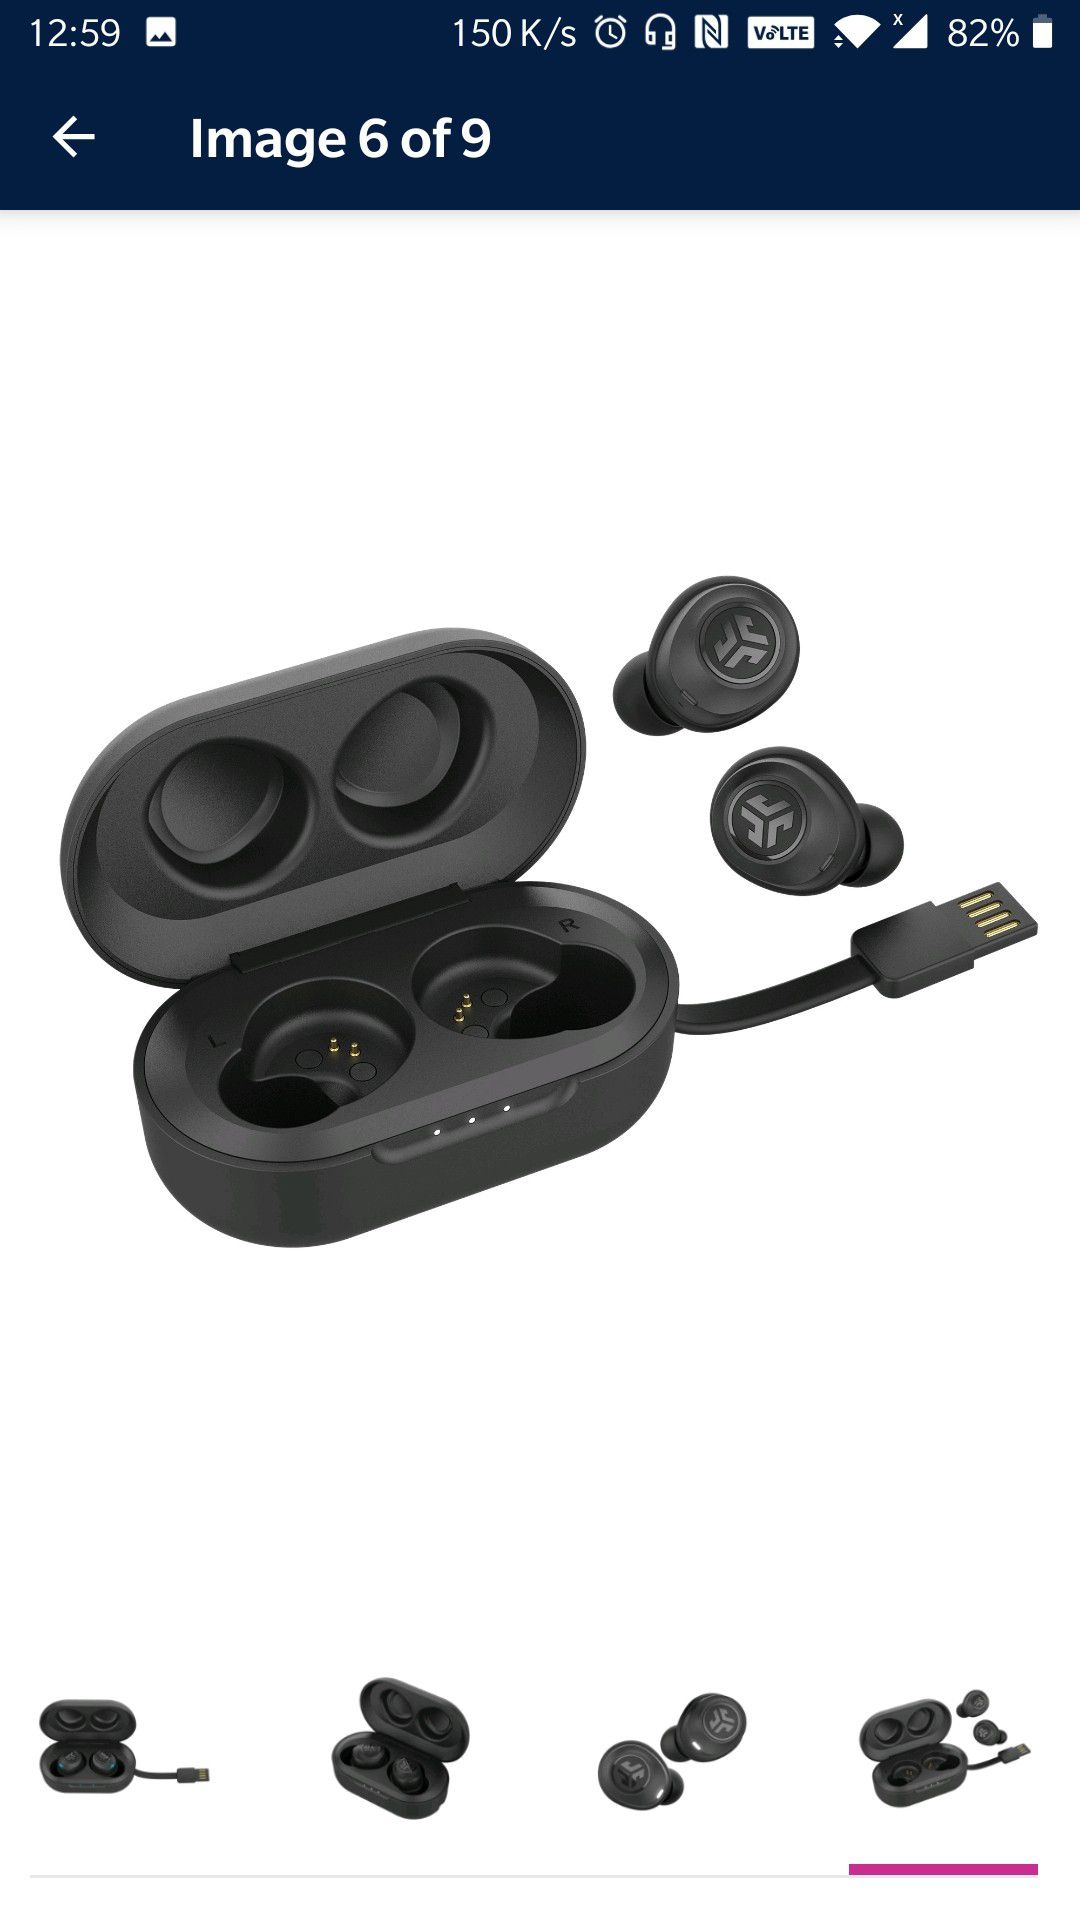 JBuds Air True Wireless Earbud Headphones - Black